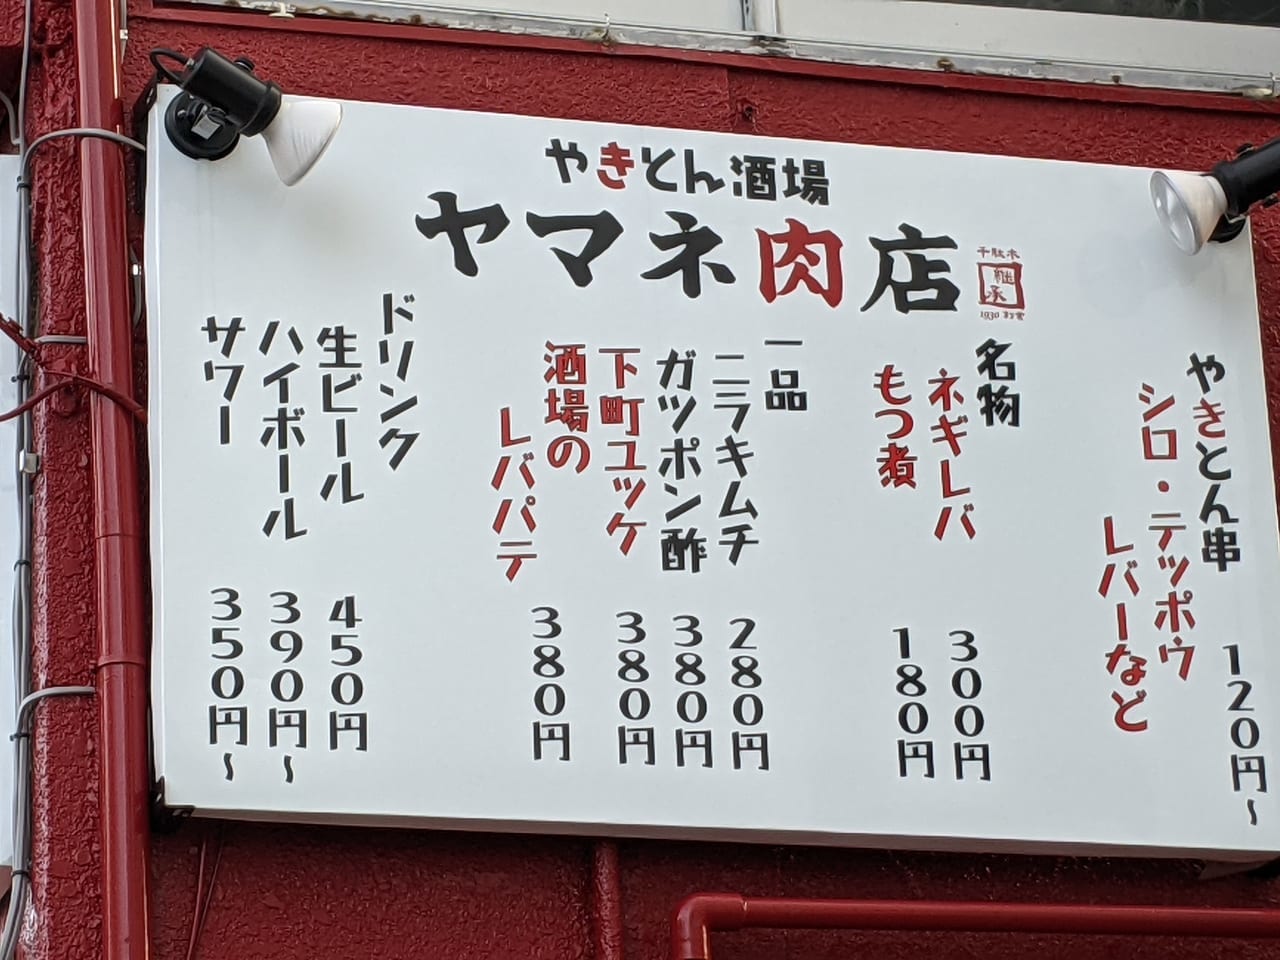 住吉駅近くやきとん酒場ヤマネ肉店の店頭看板